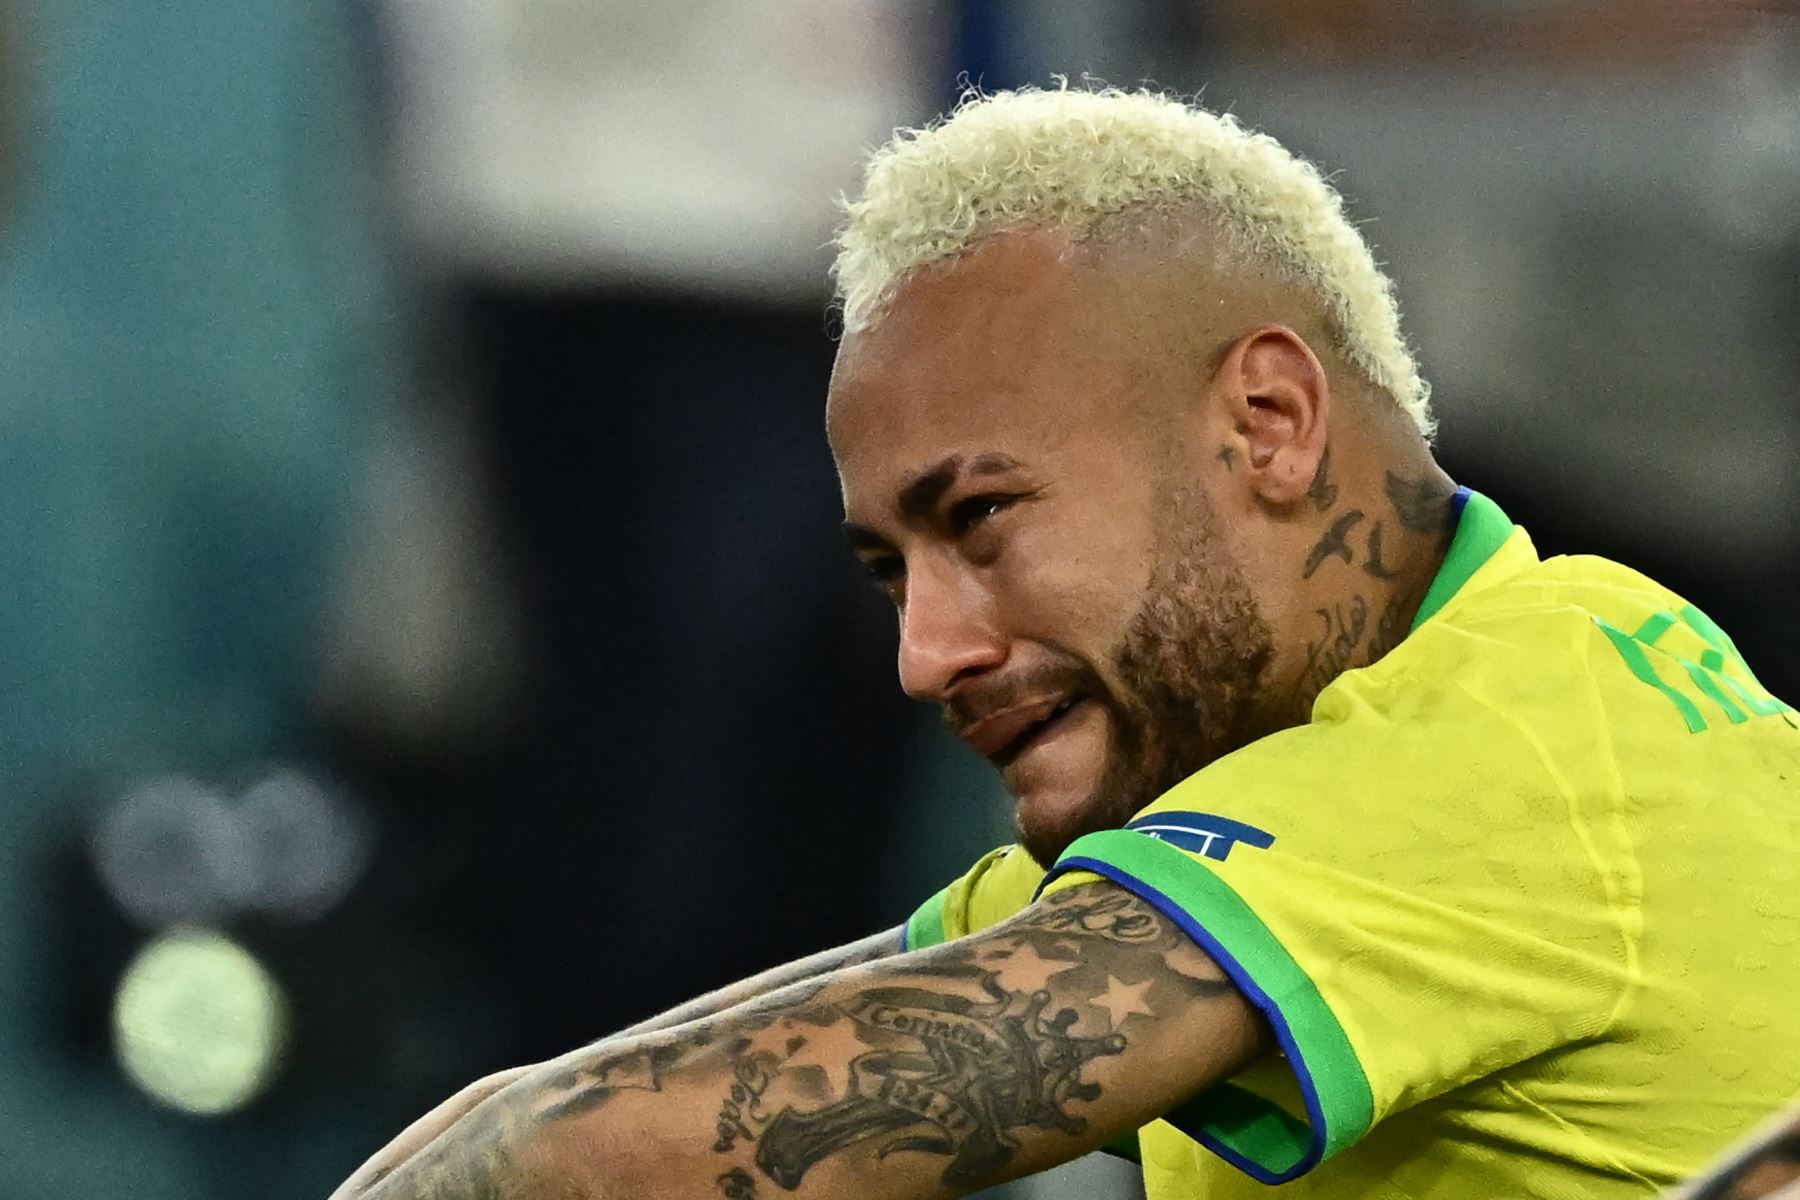 El delantero brasileño Neymar llora después de perder en la tanda de penales después de la prórroga del partido de fútbol de cuartos de final de la Copa Mundial Qatar 2022 entre Croacia y Brasil en el Education City Stadium en Al-Rayyan, al oeste de Doha, el 9 de diciembre de 2022.
Foto: AFP